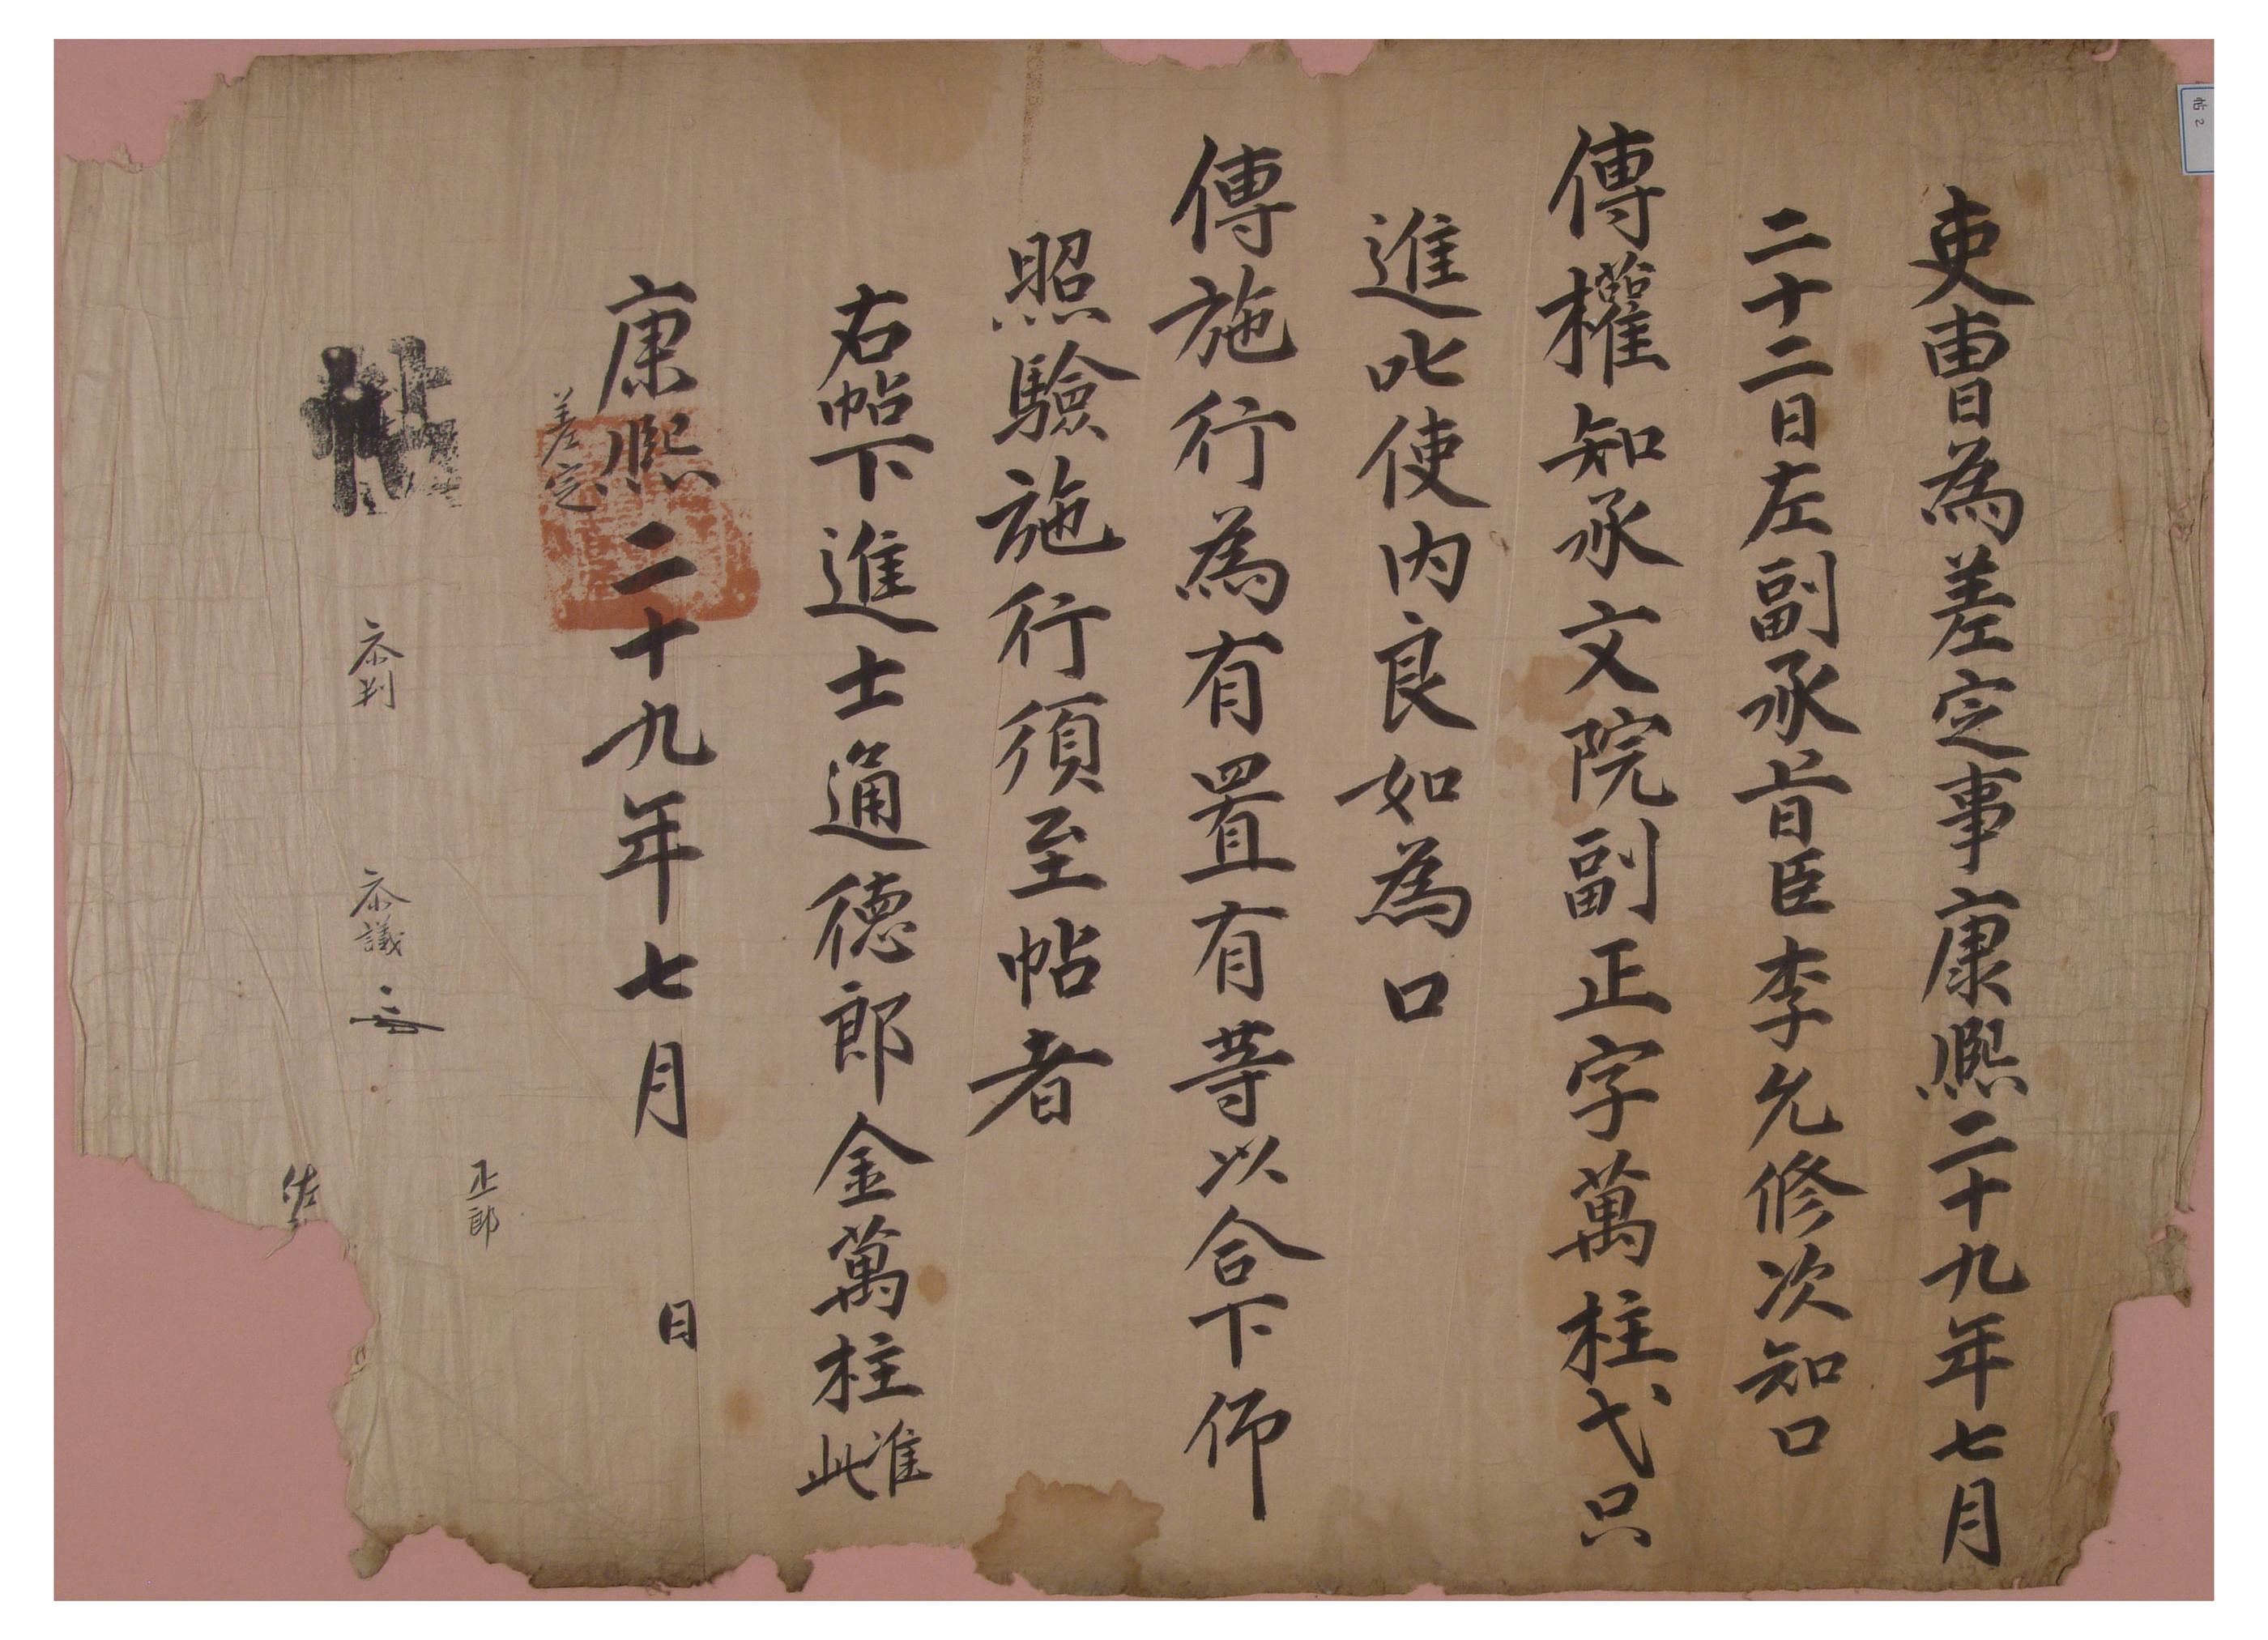 1690년에 이조에서 김만주에게 발행한 차첩